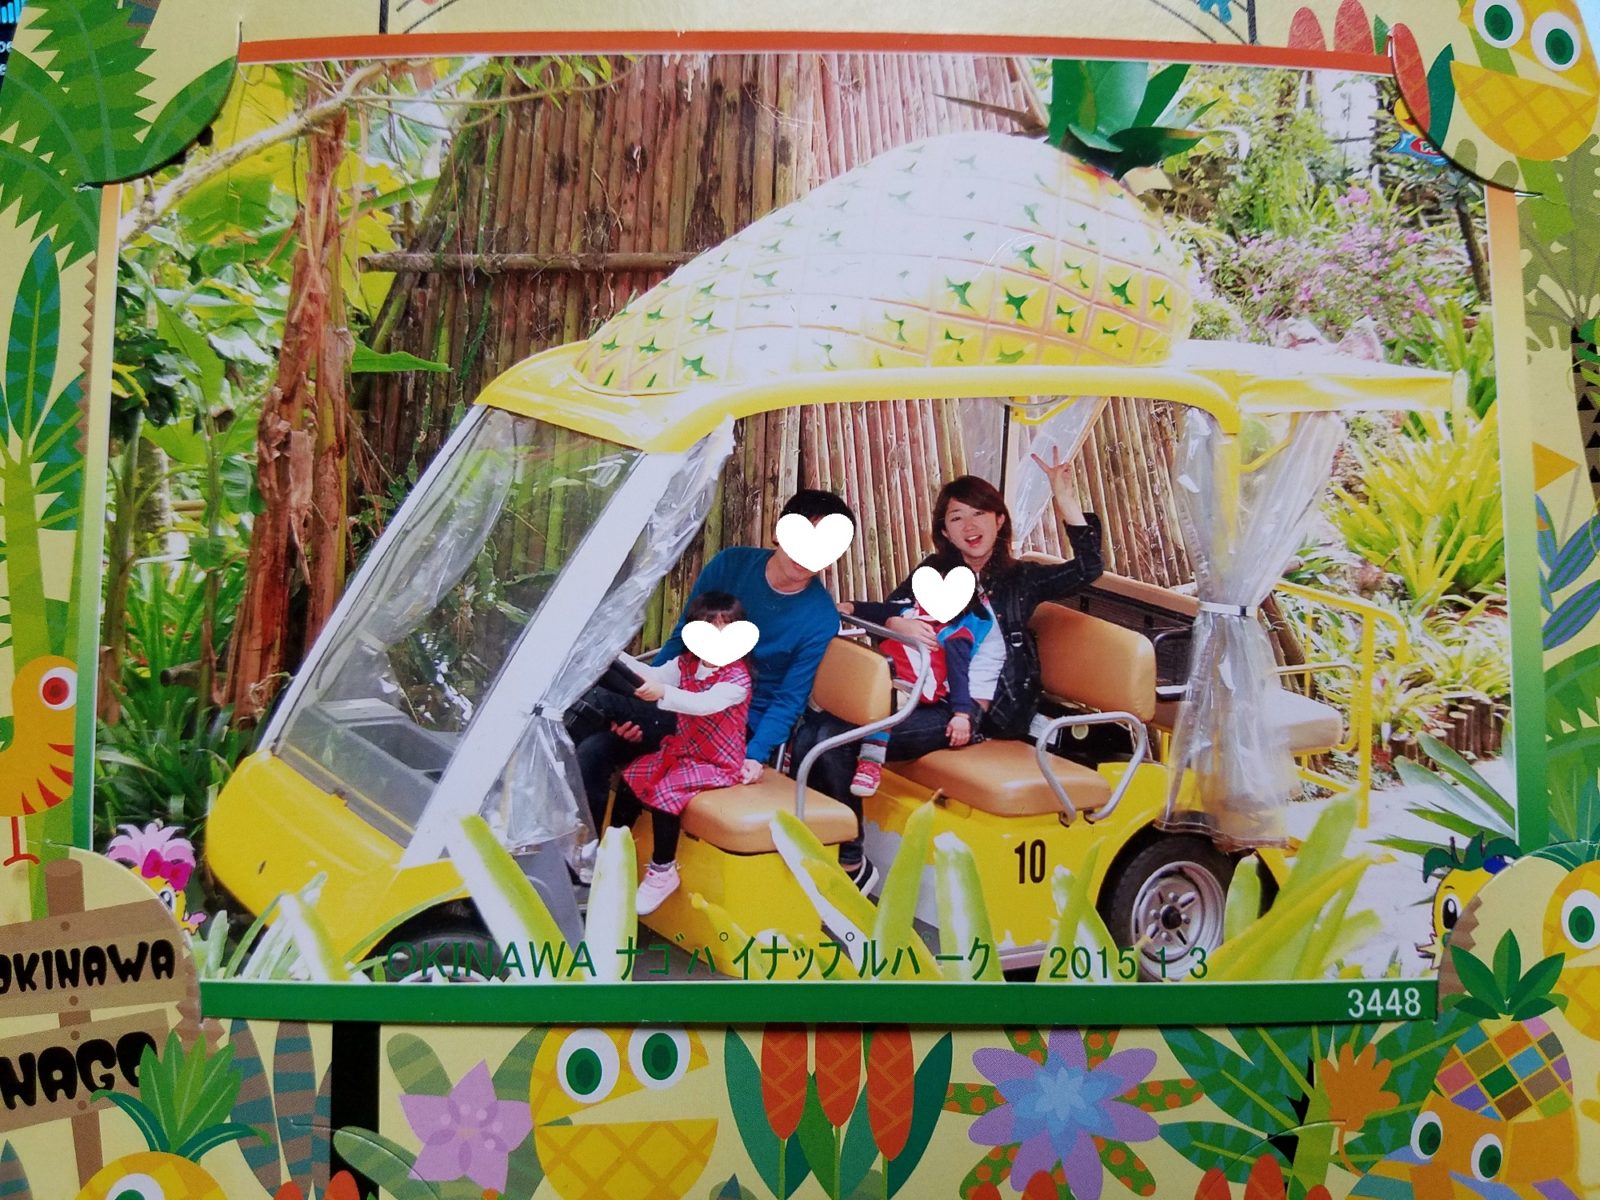 ナゴパイナップルパーク の不思議な魅力 沖縄旅行のアクセントに 雨の日もok ぎゅってweb